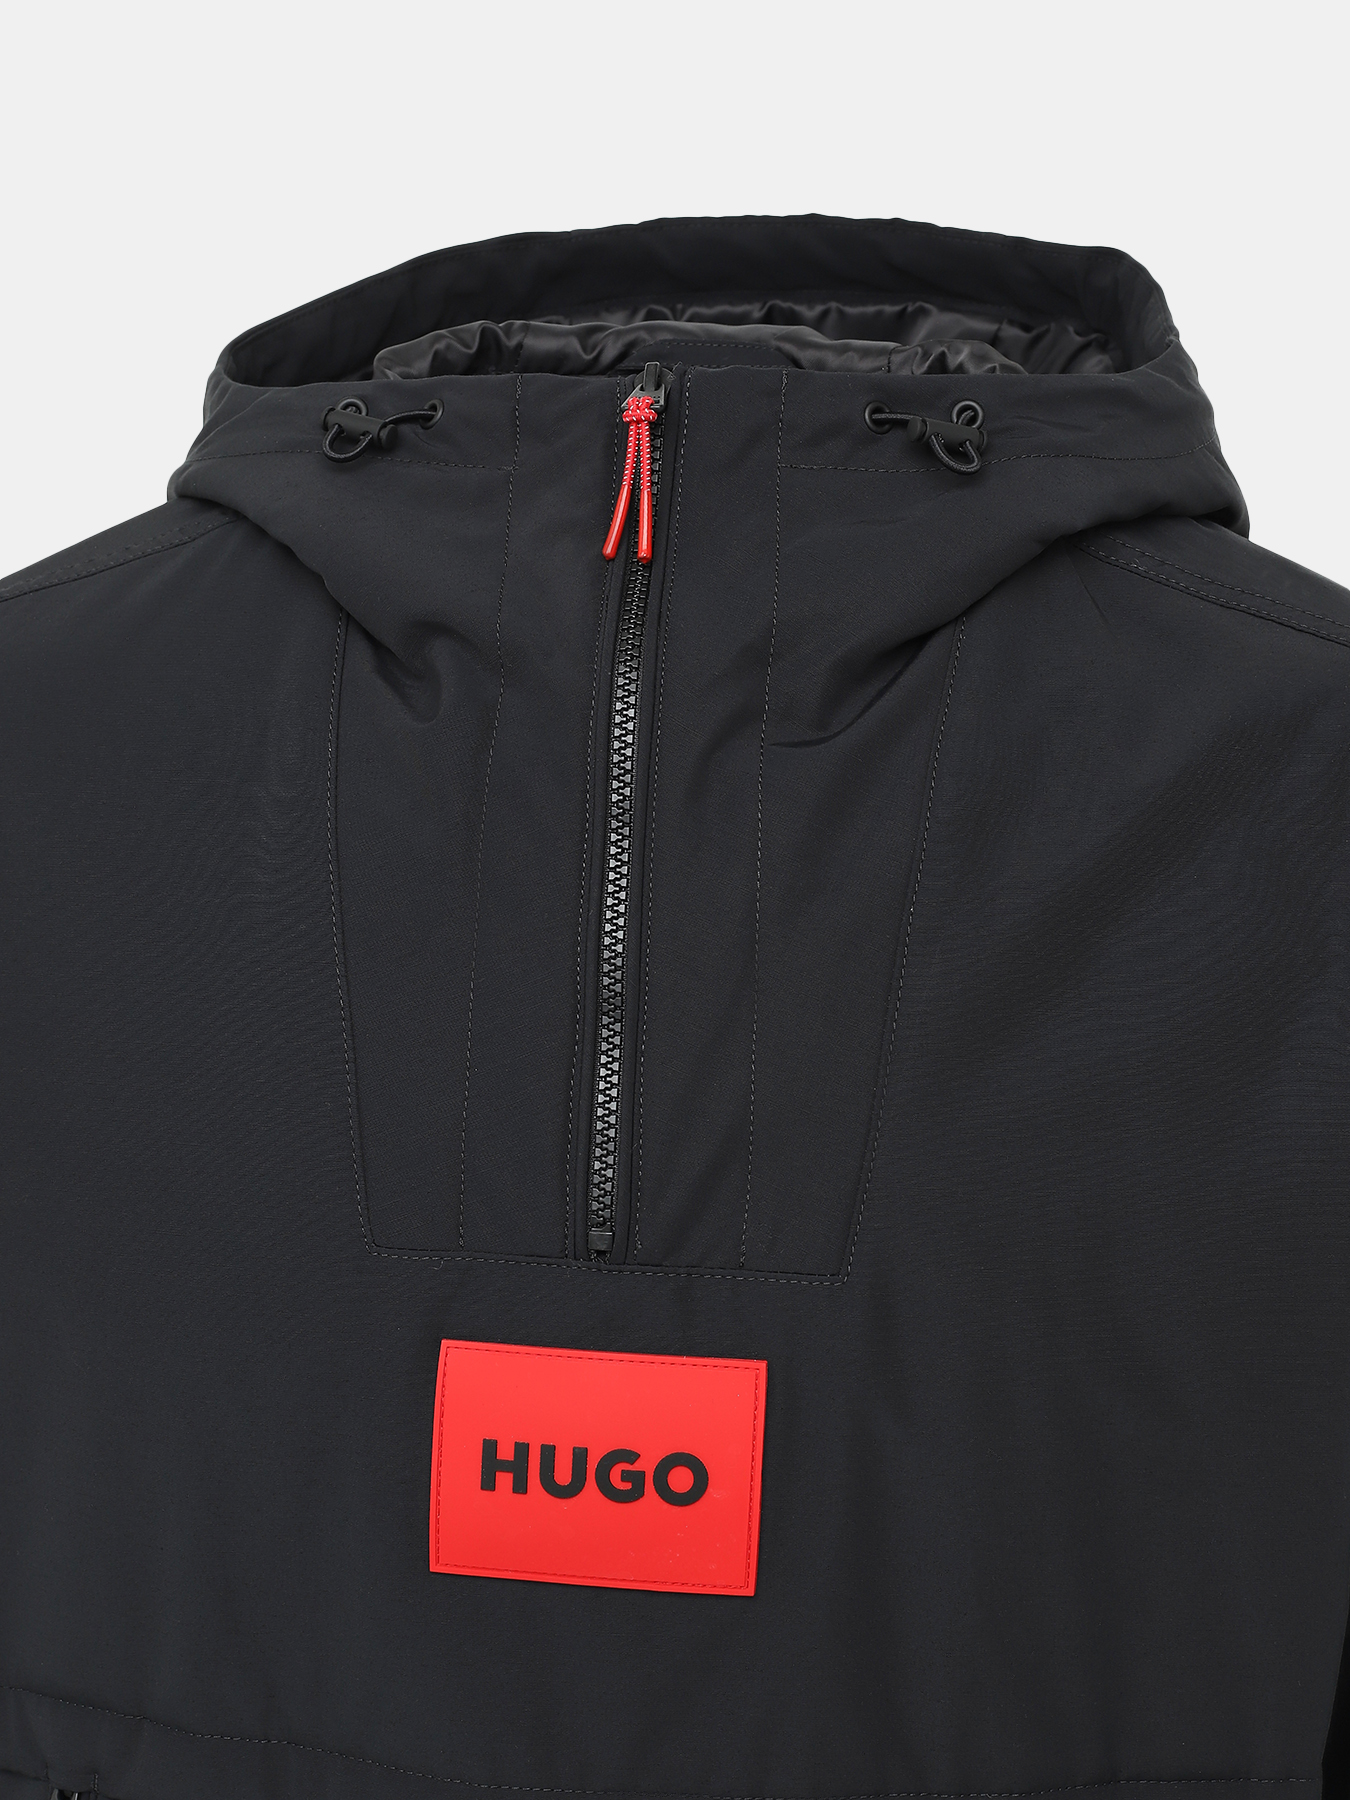 Куртка Breaker HUGO 436970-043, цвет черный, размер 48-50 - фото 2